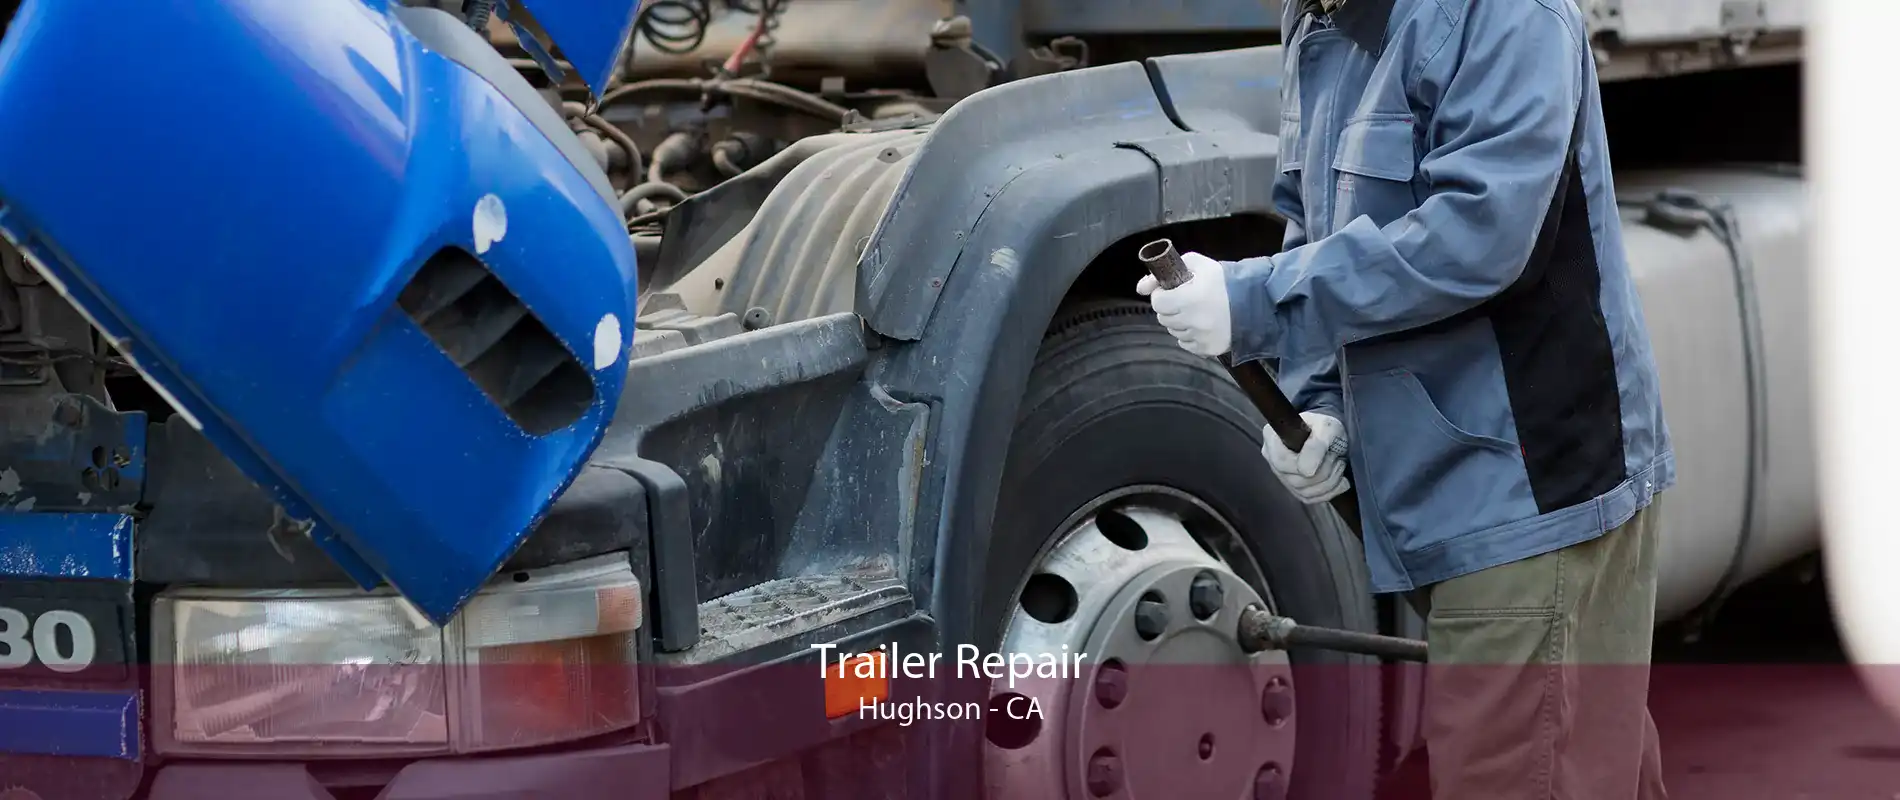 Trailer Repair Hughson - CA